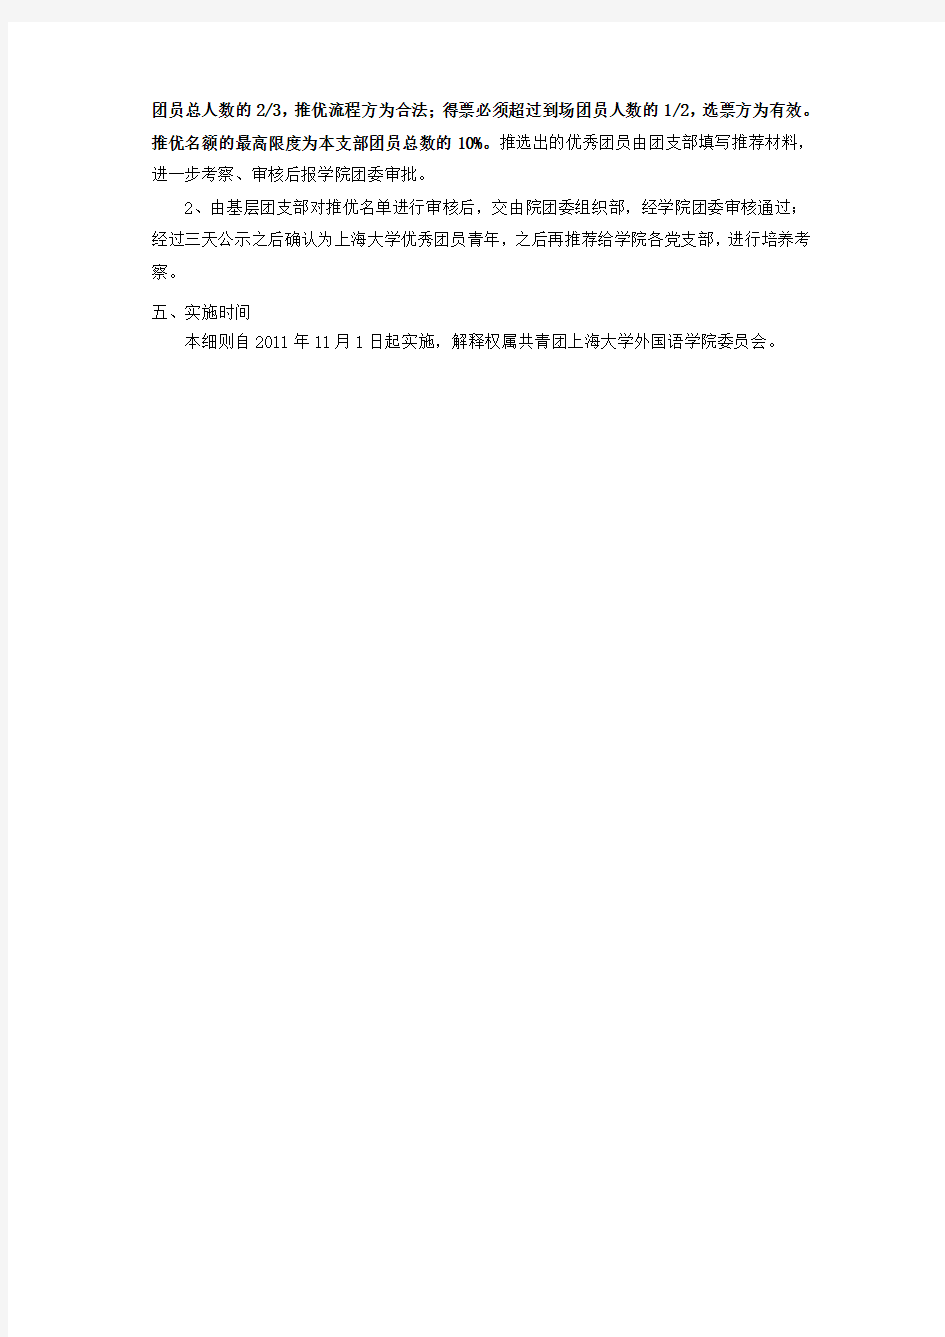 上海大学外国语学院团员推优实施细则(草案) 2